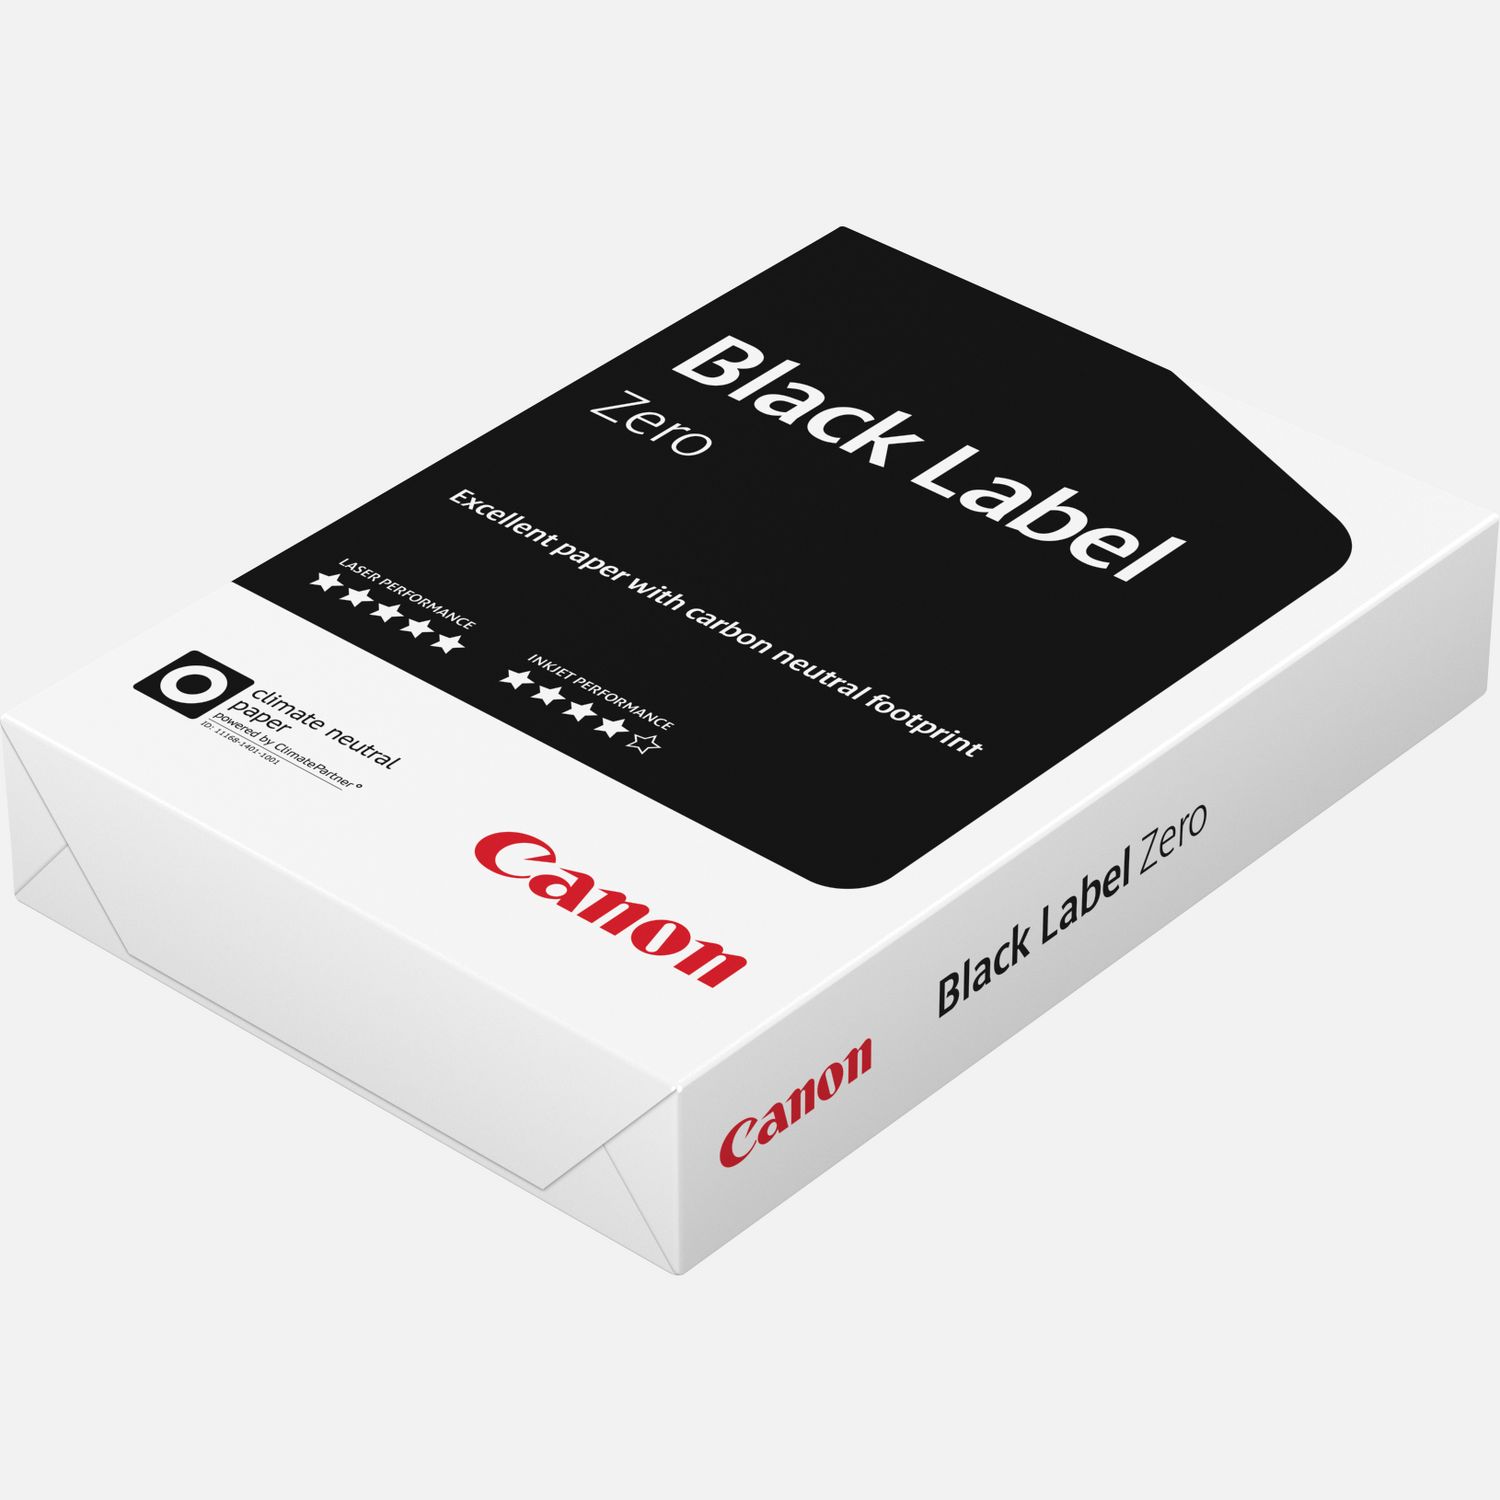 Bancale Carta per fotocopie Canon Black formato A4 – 75 gr.